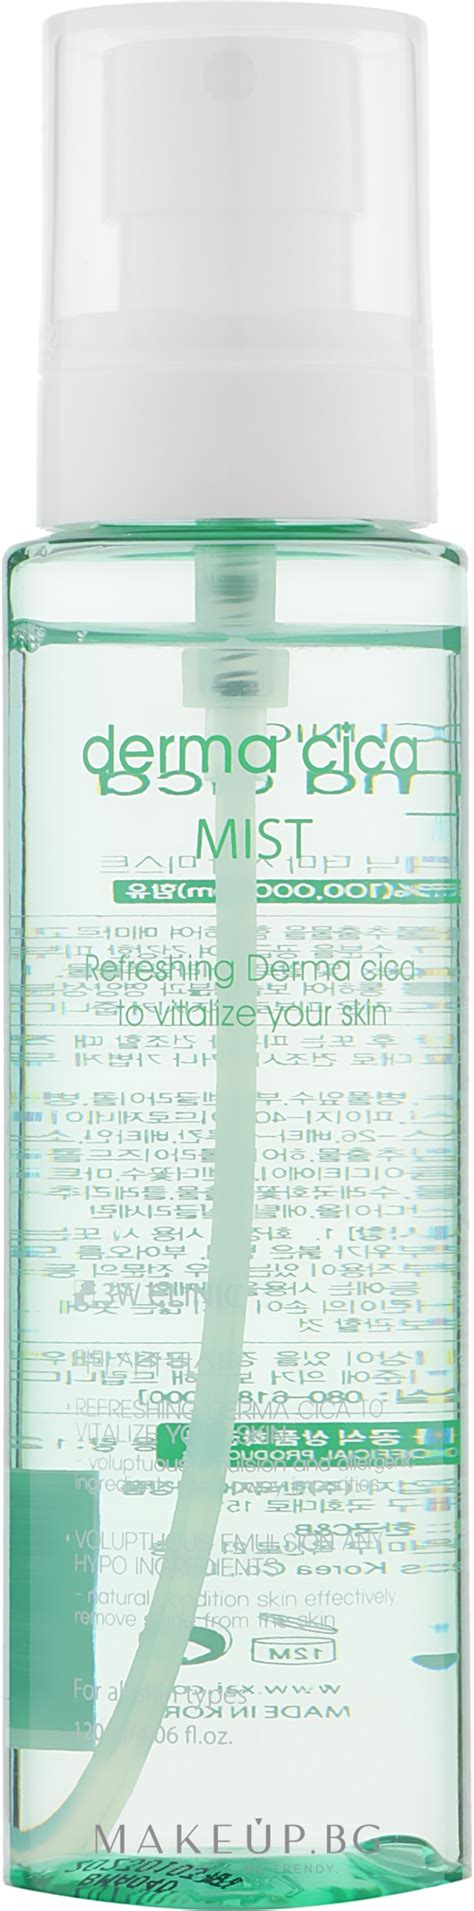 Освежаващ мист за лице 3w Clinic Derma Cica Mist Makeupbg